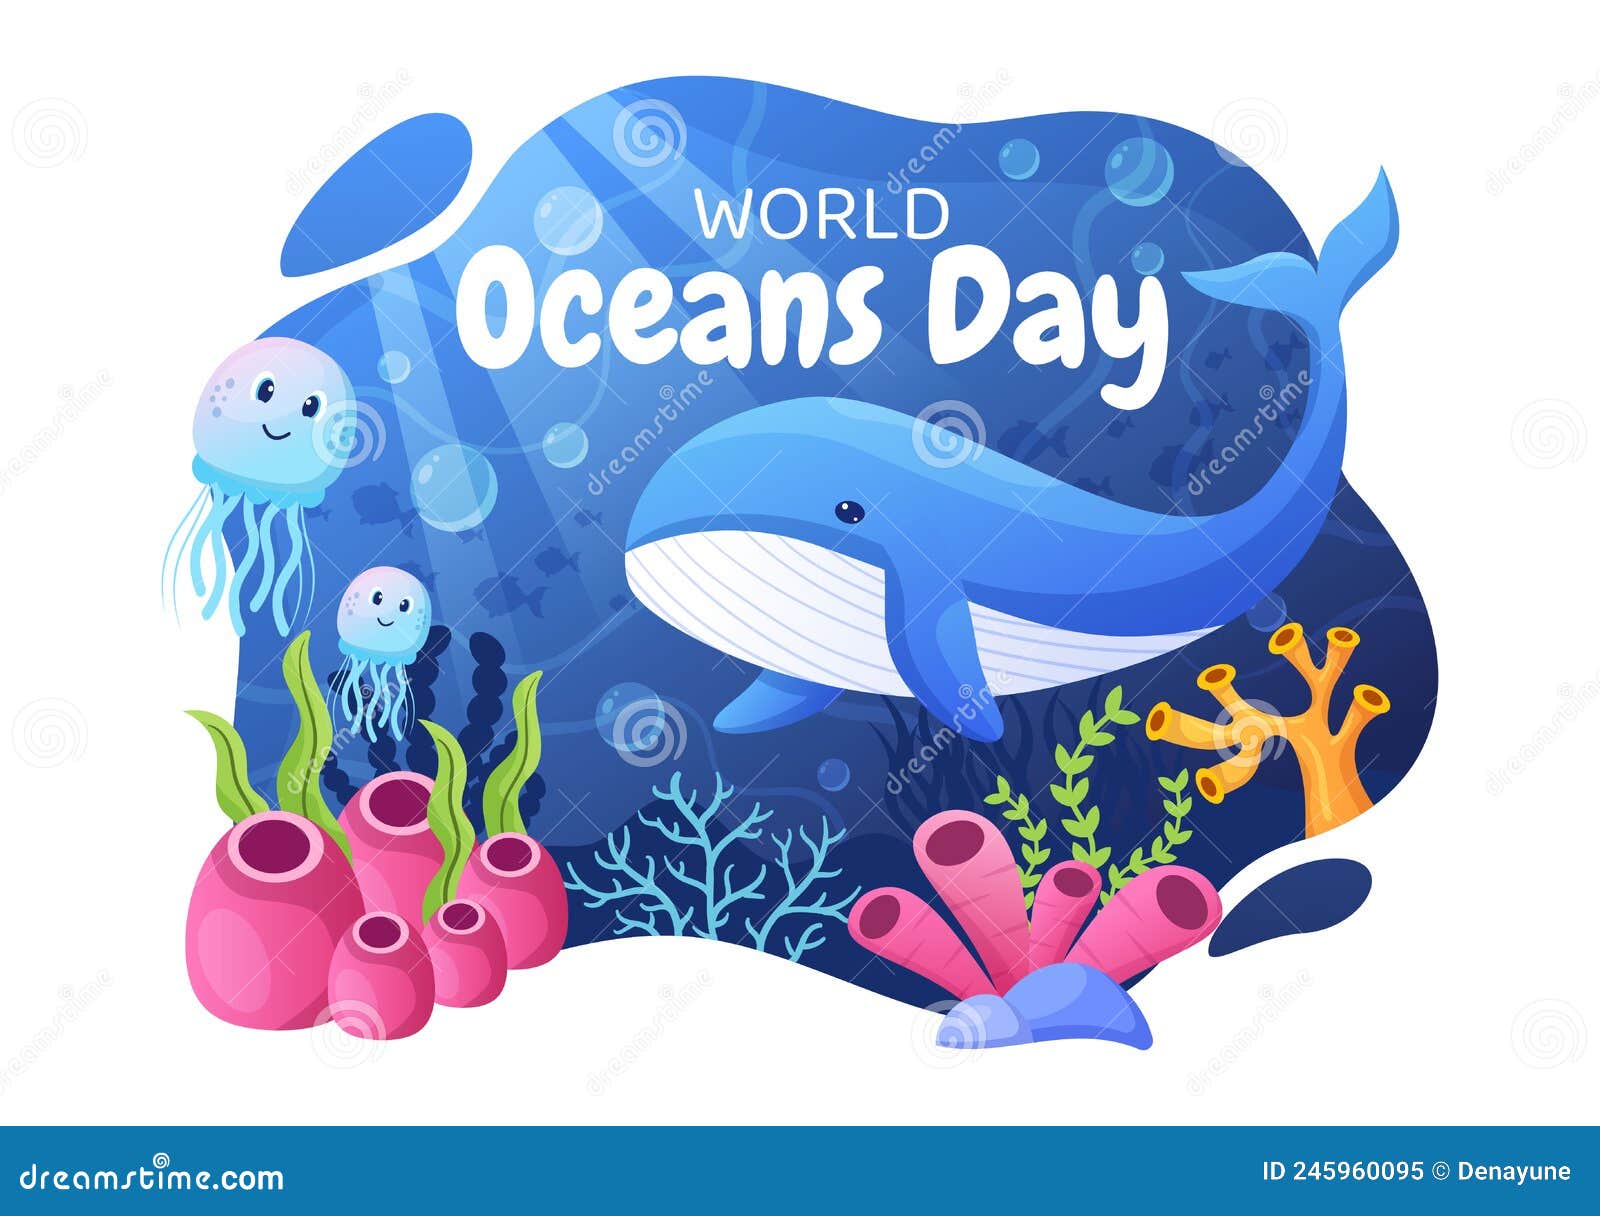 770 World Oceans Day Illustrations RoyaltyFree Vector Graphics  Clip  Art  iStock